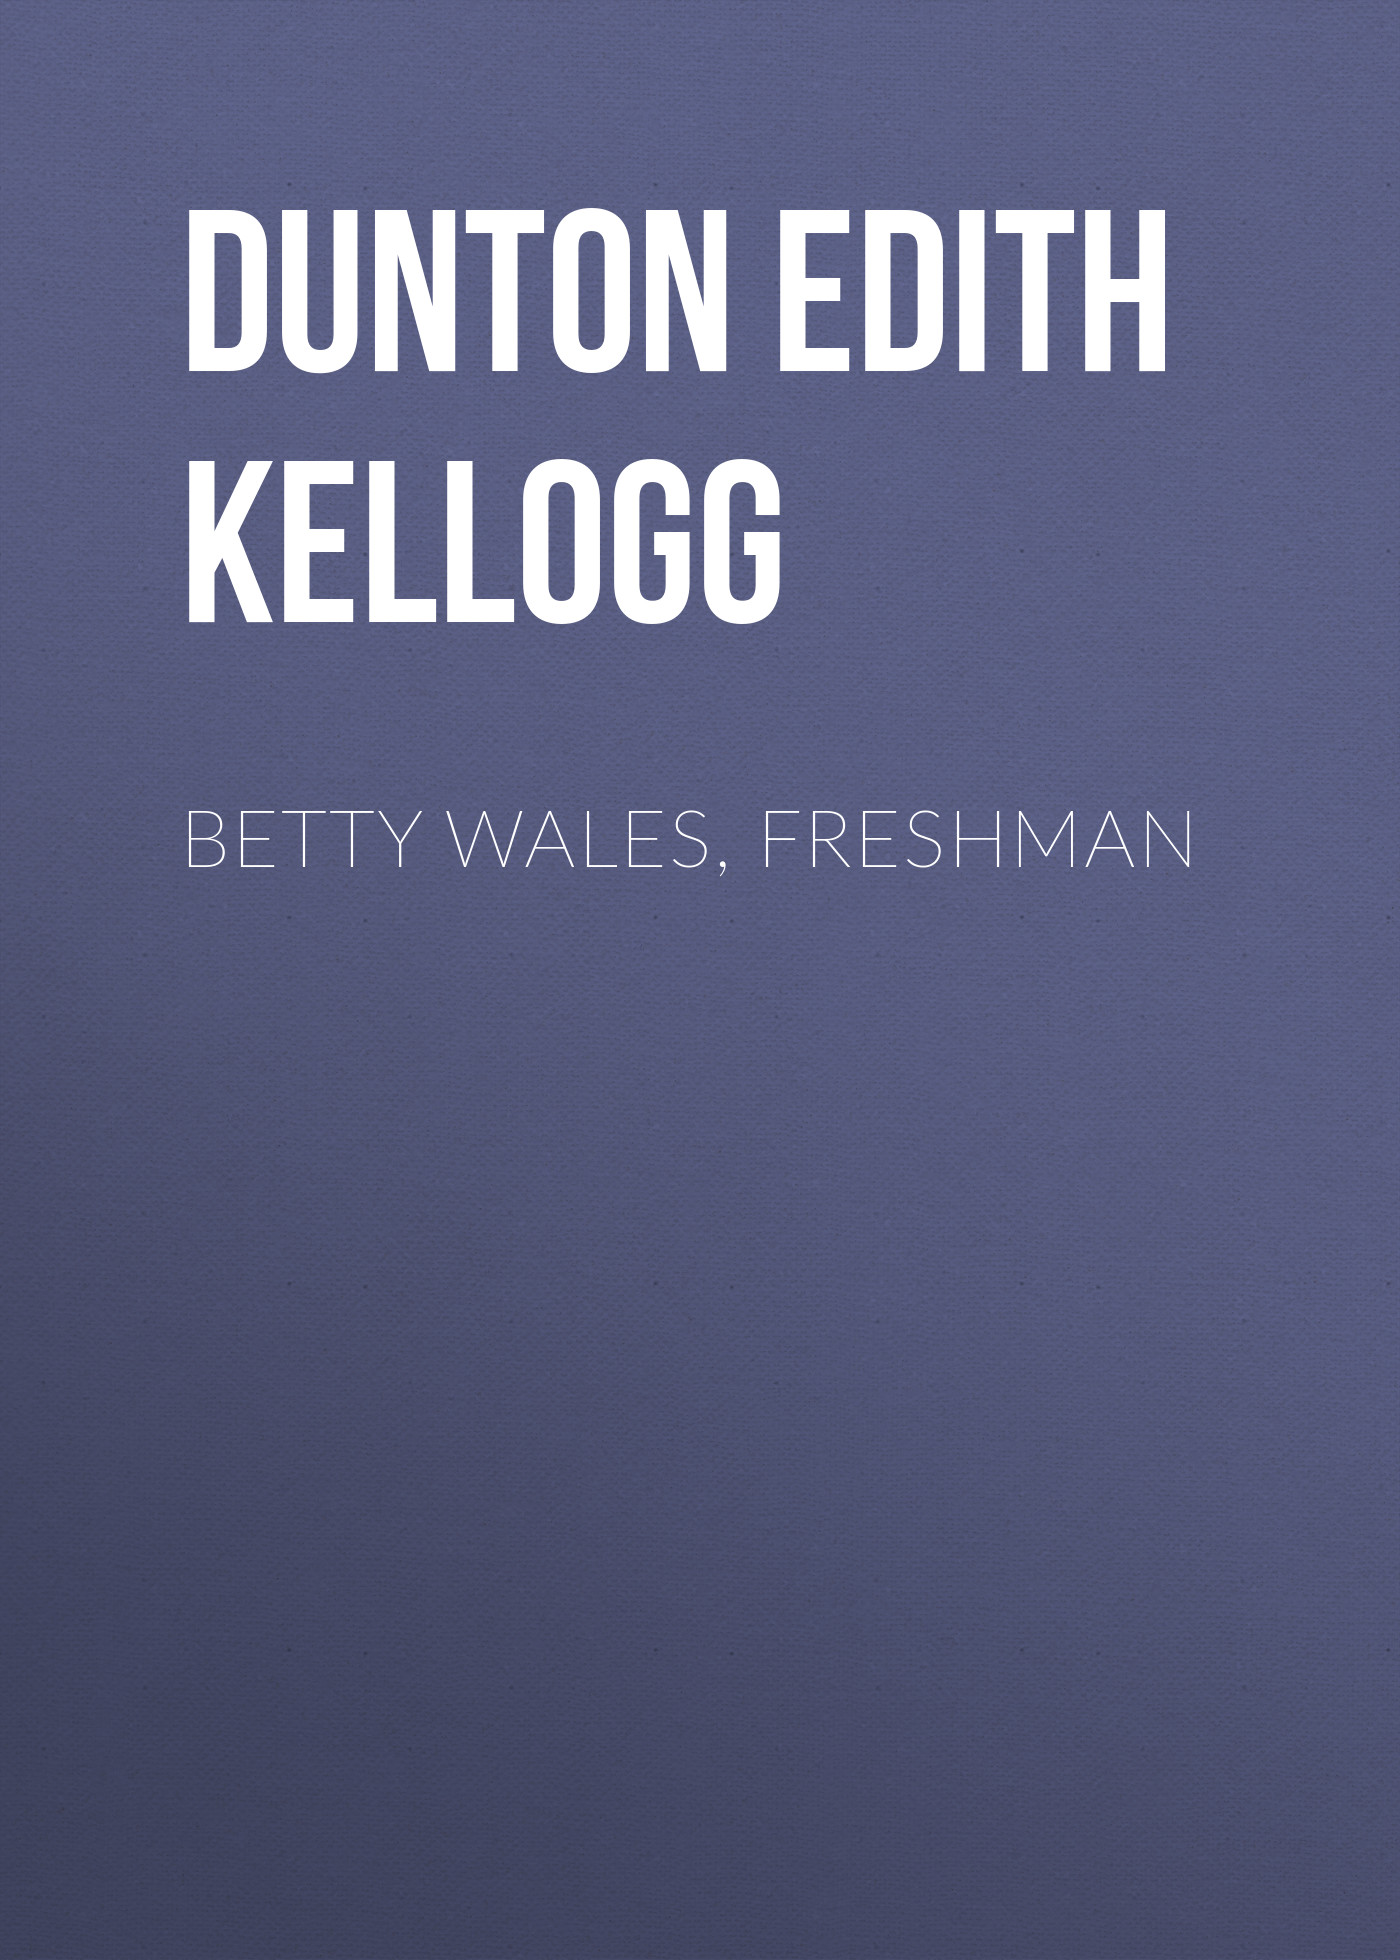 Книга Betty Wales, Freshman из серии , созданная Edith Dunton, может относится к жанру Зарубежная старинная литература, Зарубежная классика. Стоимость электронной книги Betty Wales, Freshman с идентификатором 24621597 составляет 0 руб.